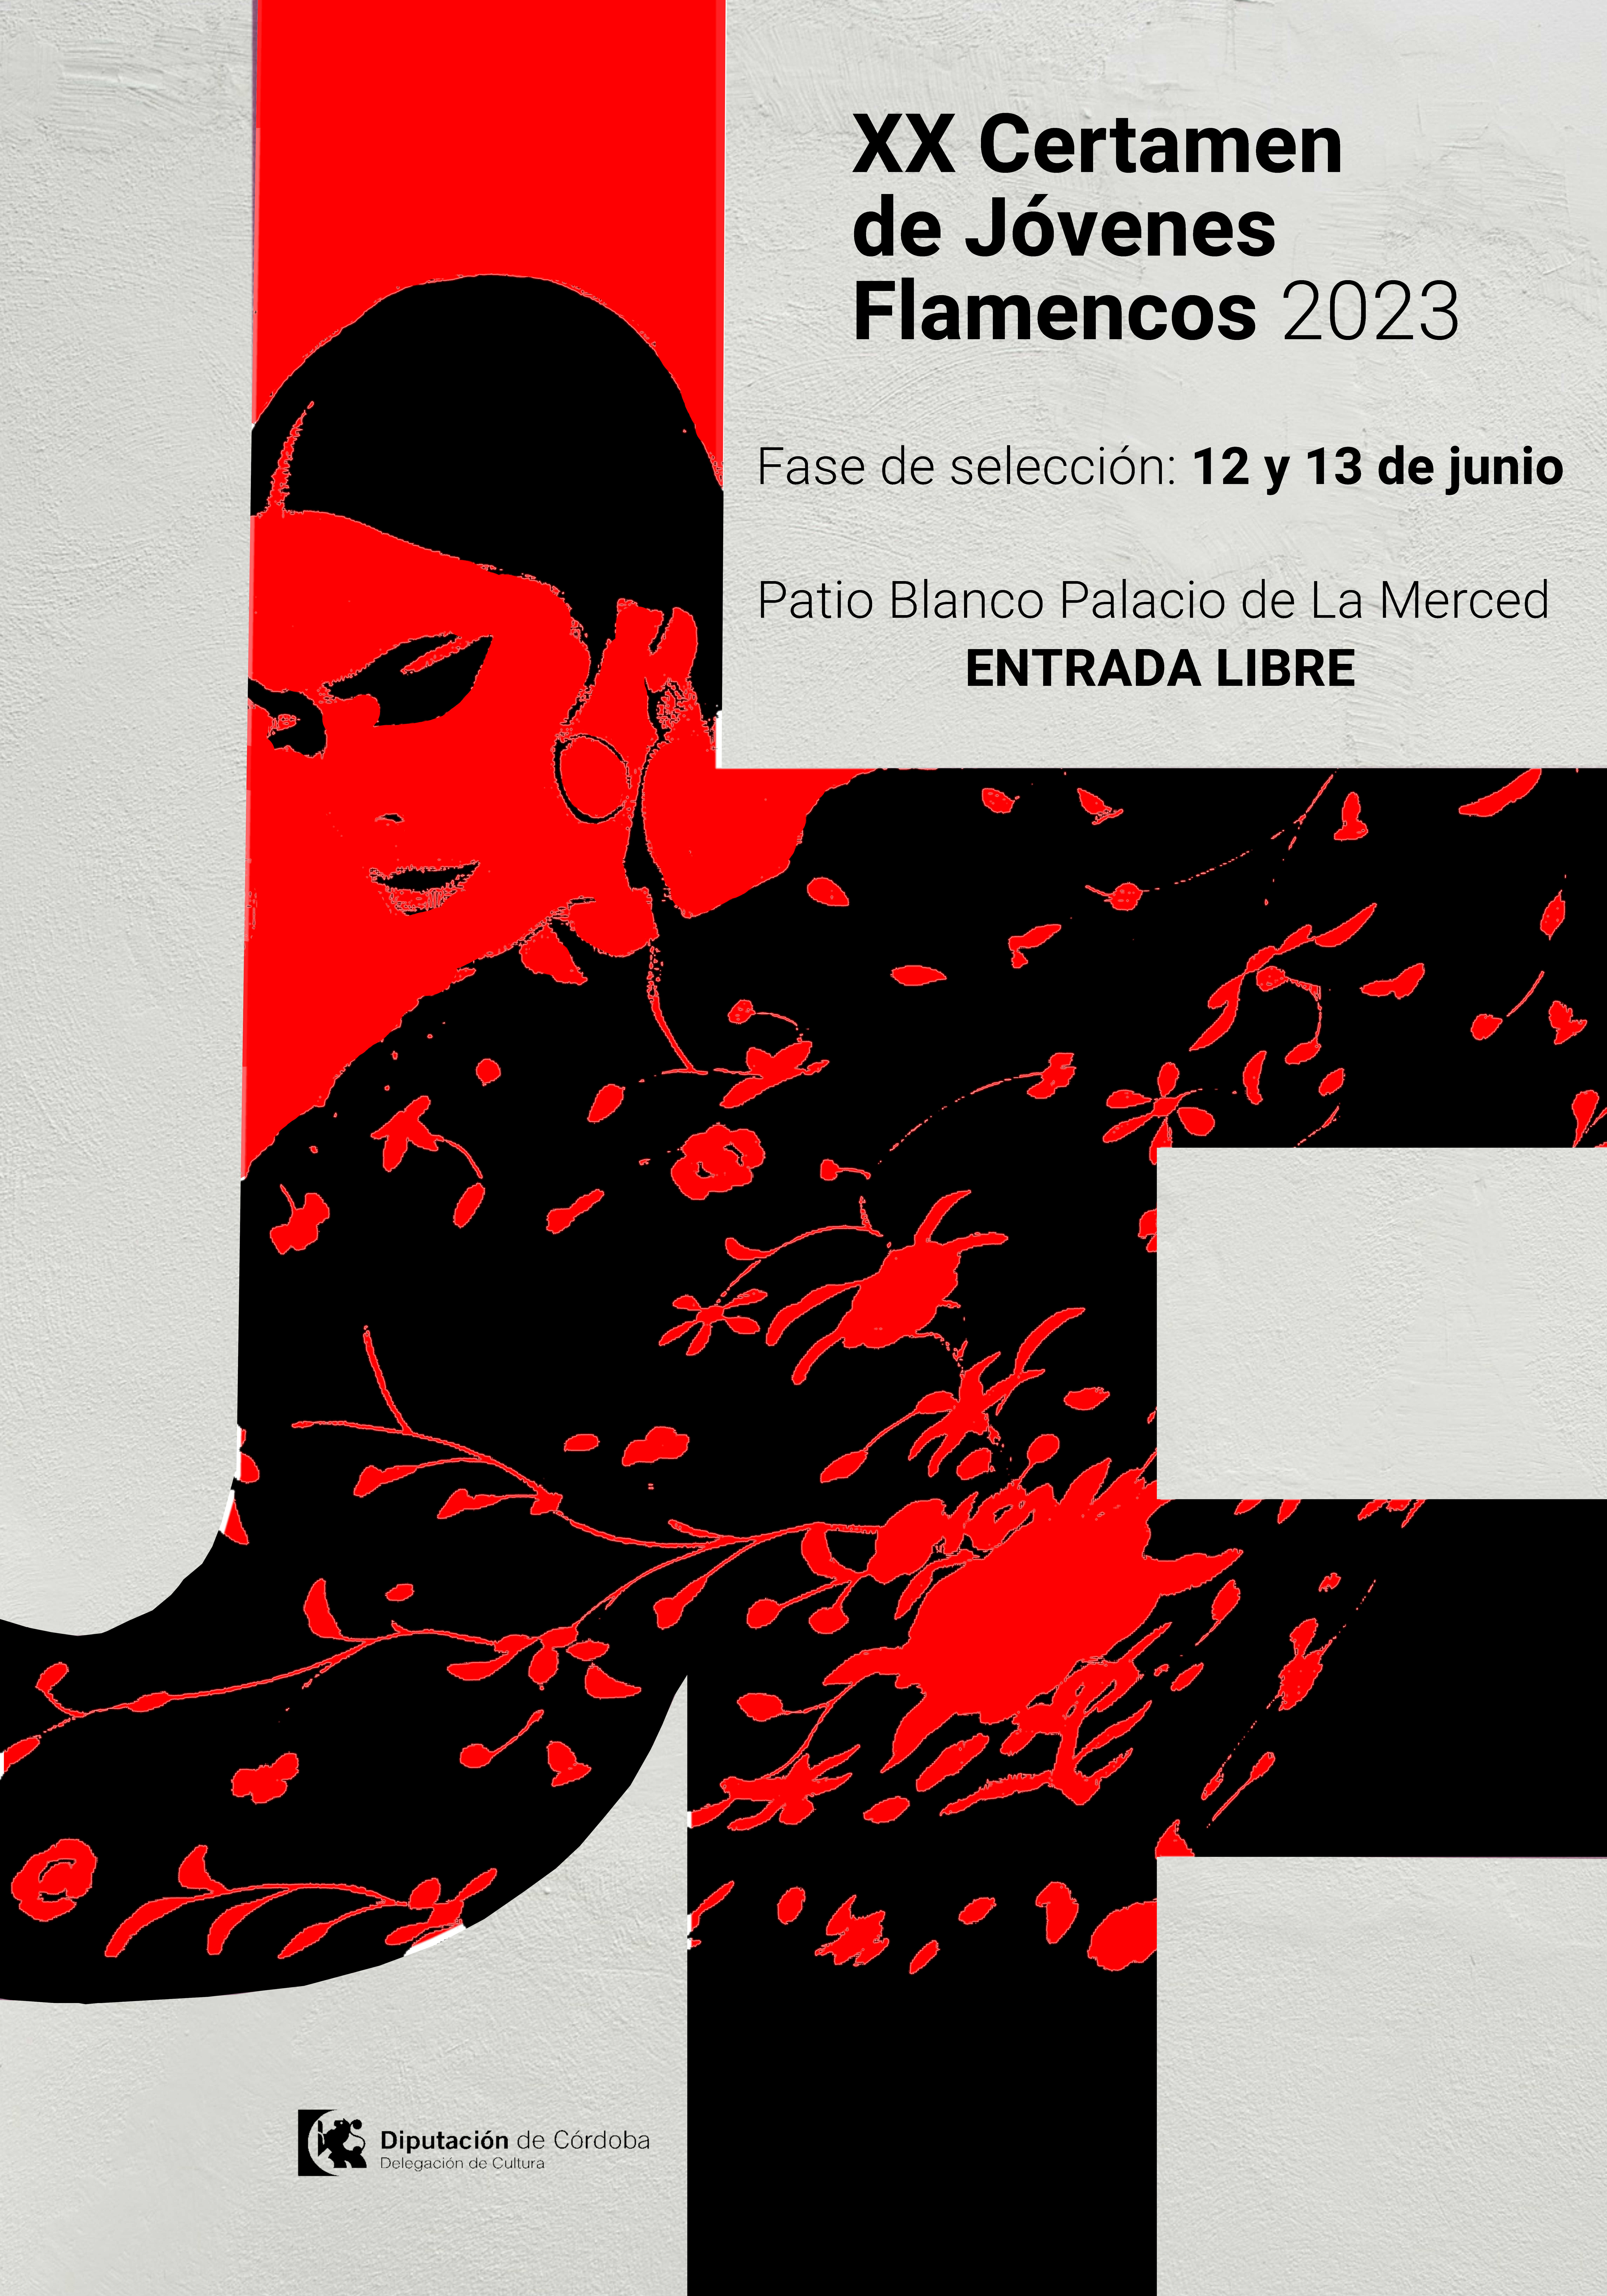 Fase de selección del XX Certamen de Jóvenes Flamencos